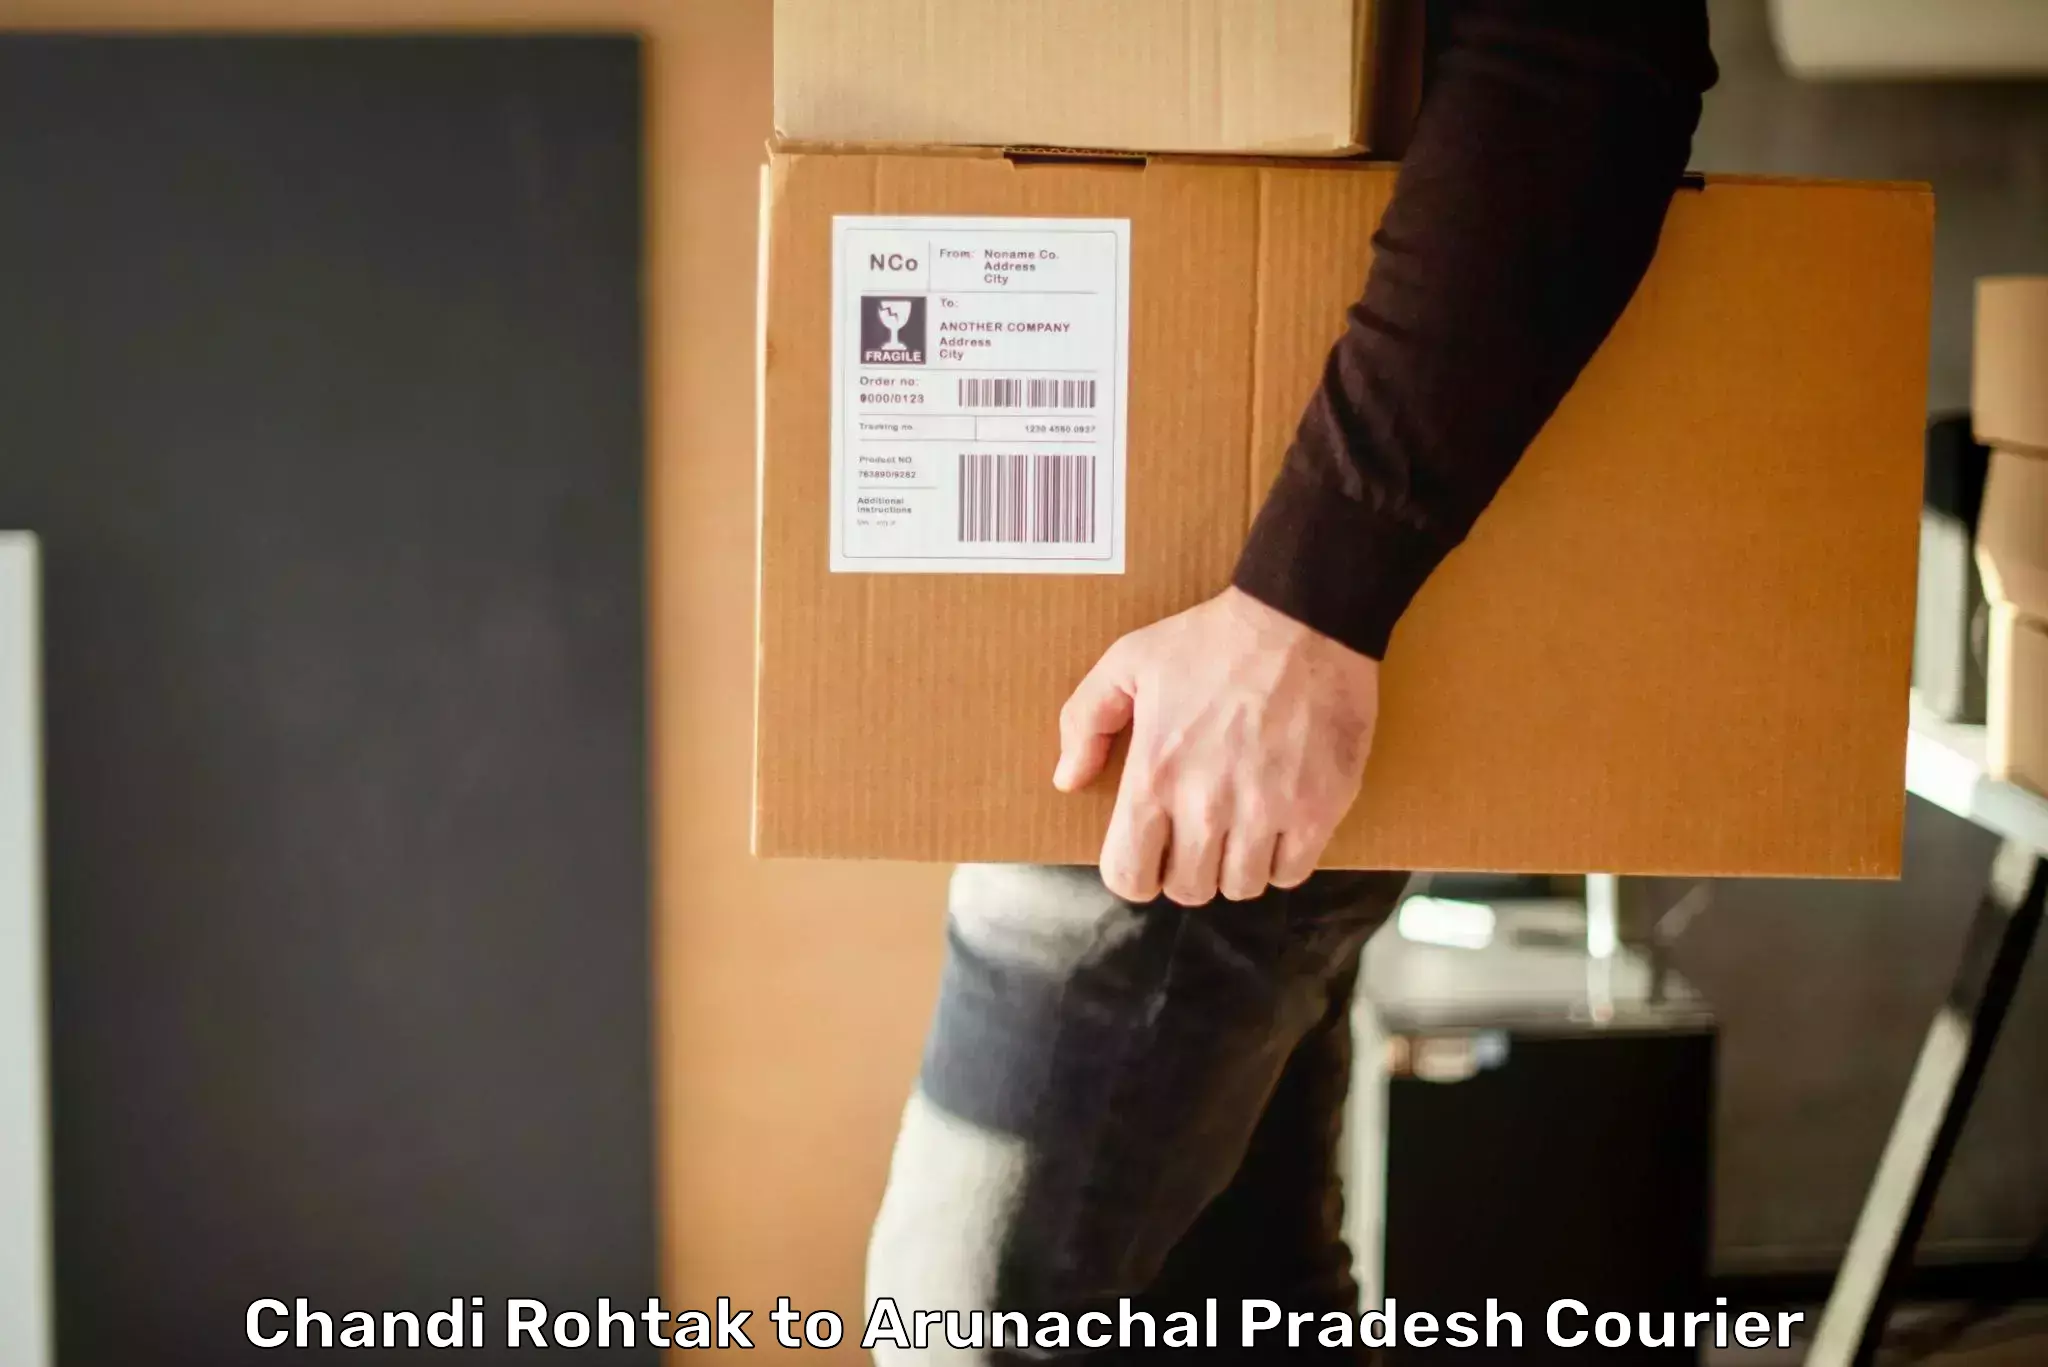 Individual parcel service Chandi Rohtak to Deomali